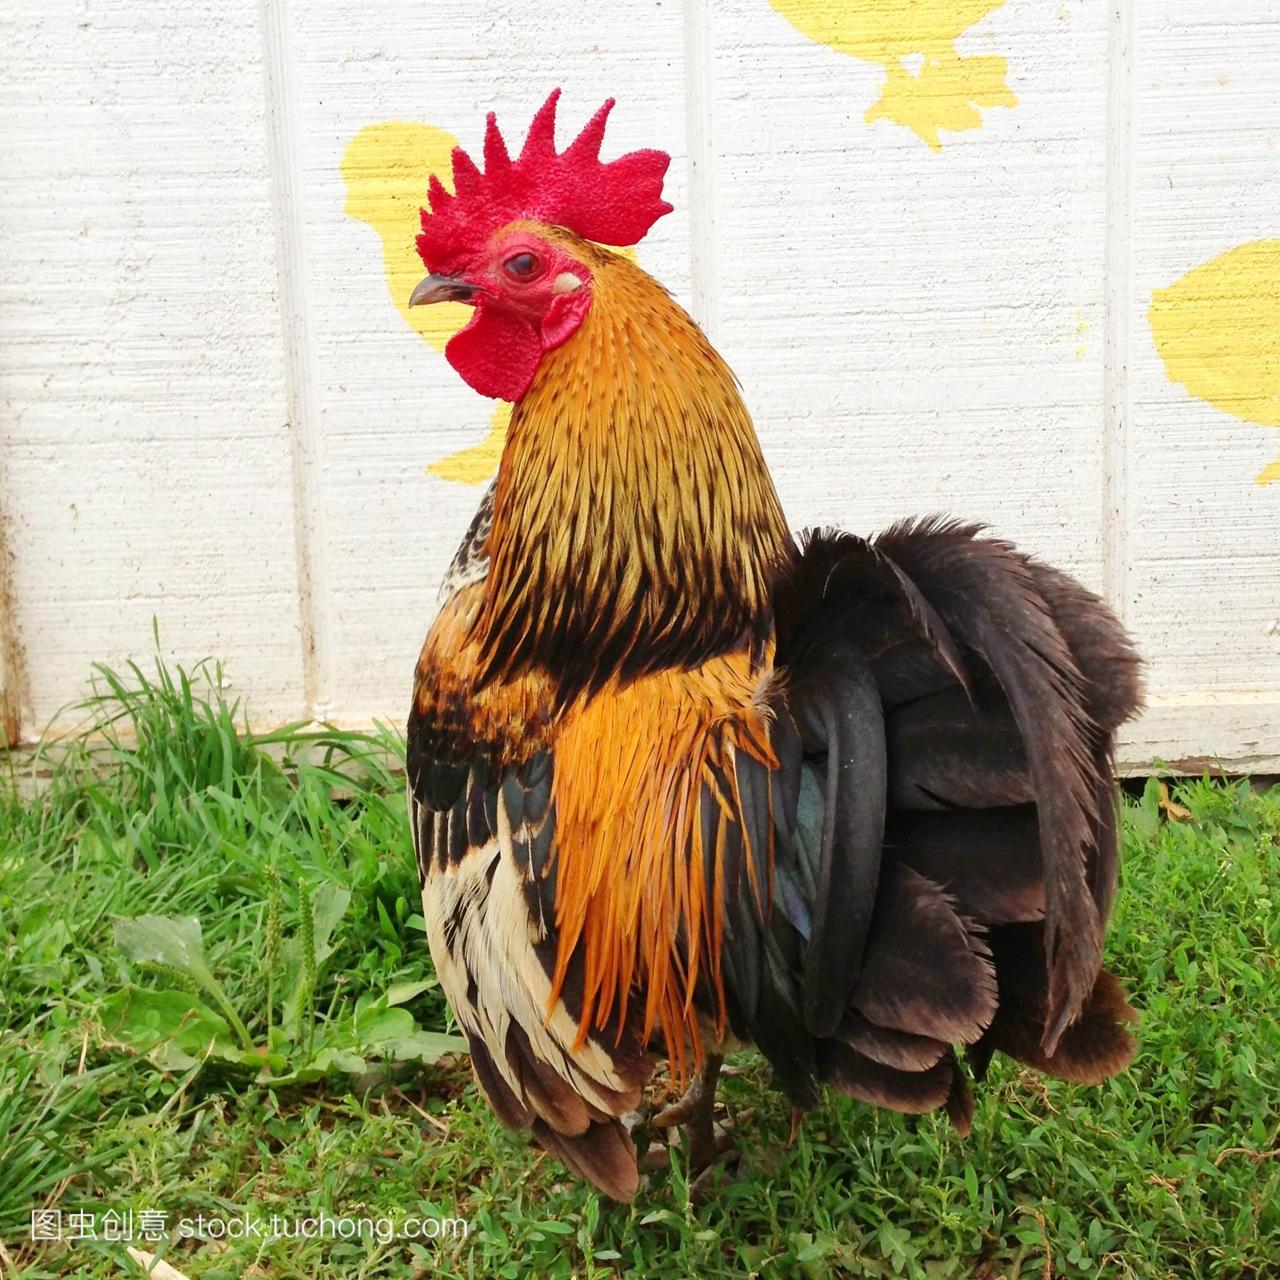 一只公鸡的画像在农场美国马里兰州